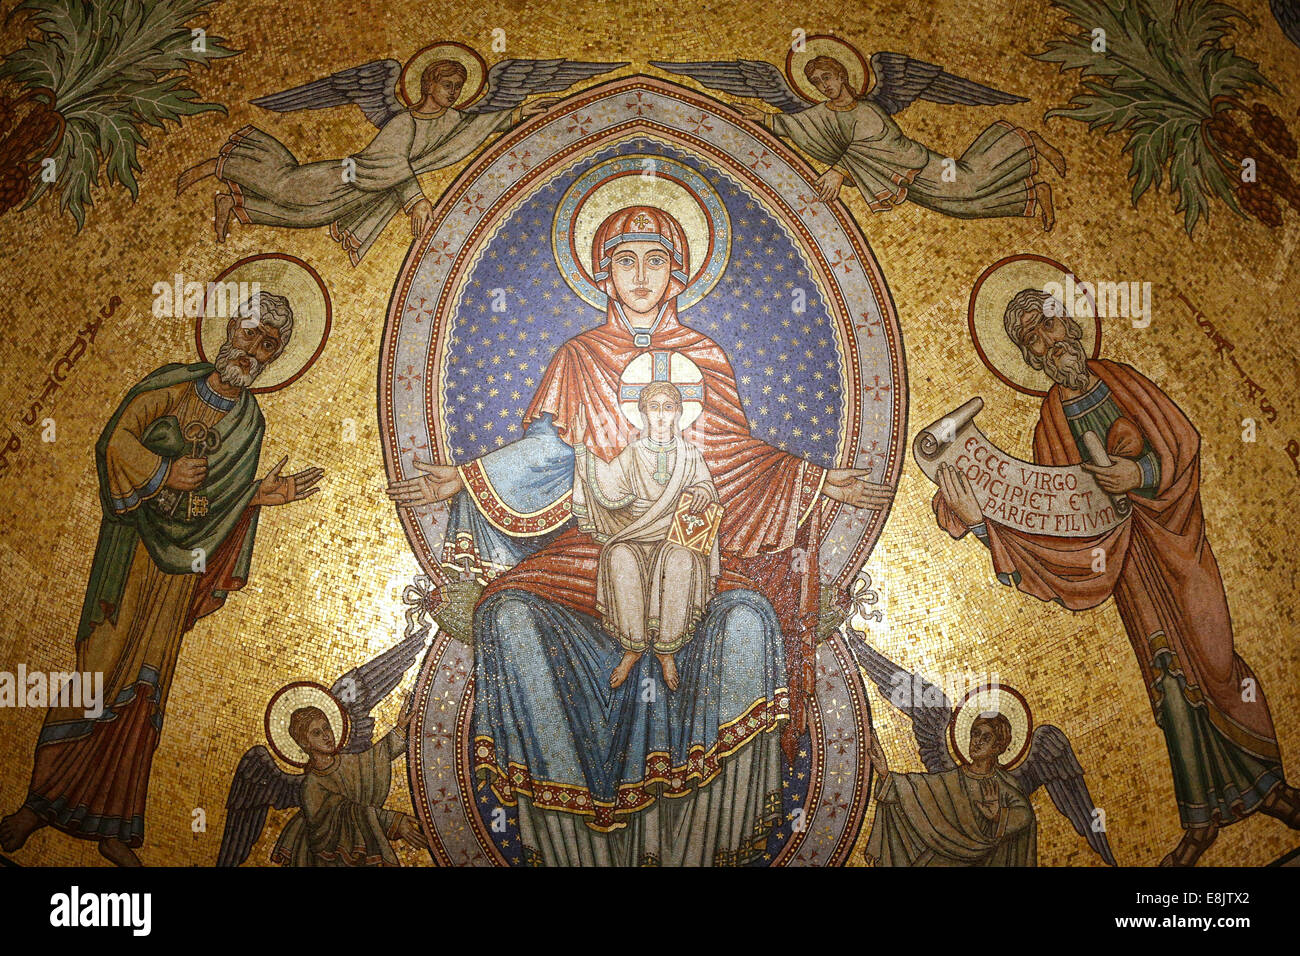 La Cattedrale di San Nicola. Mosaico absidale. La Vergine Maria, Gesù, il profeta Isaia e di San Pietro Apostolo. Foto Stock